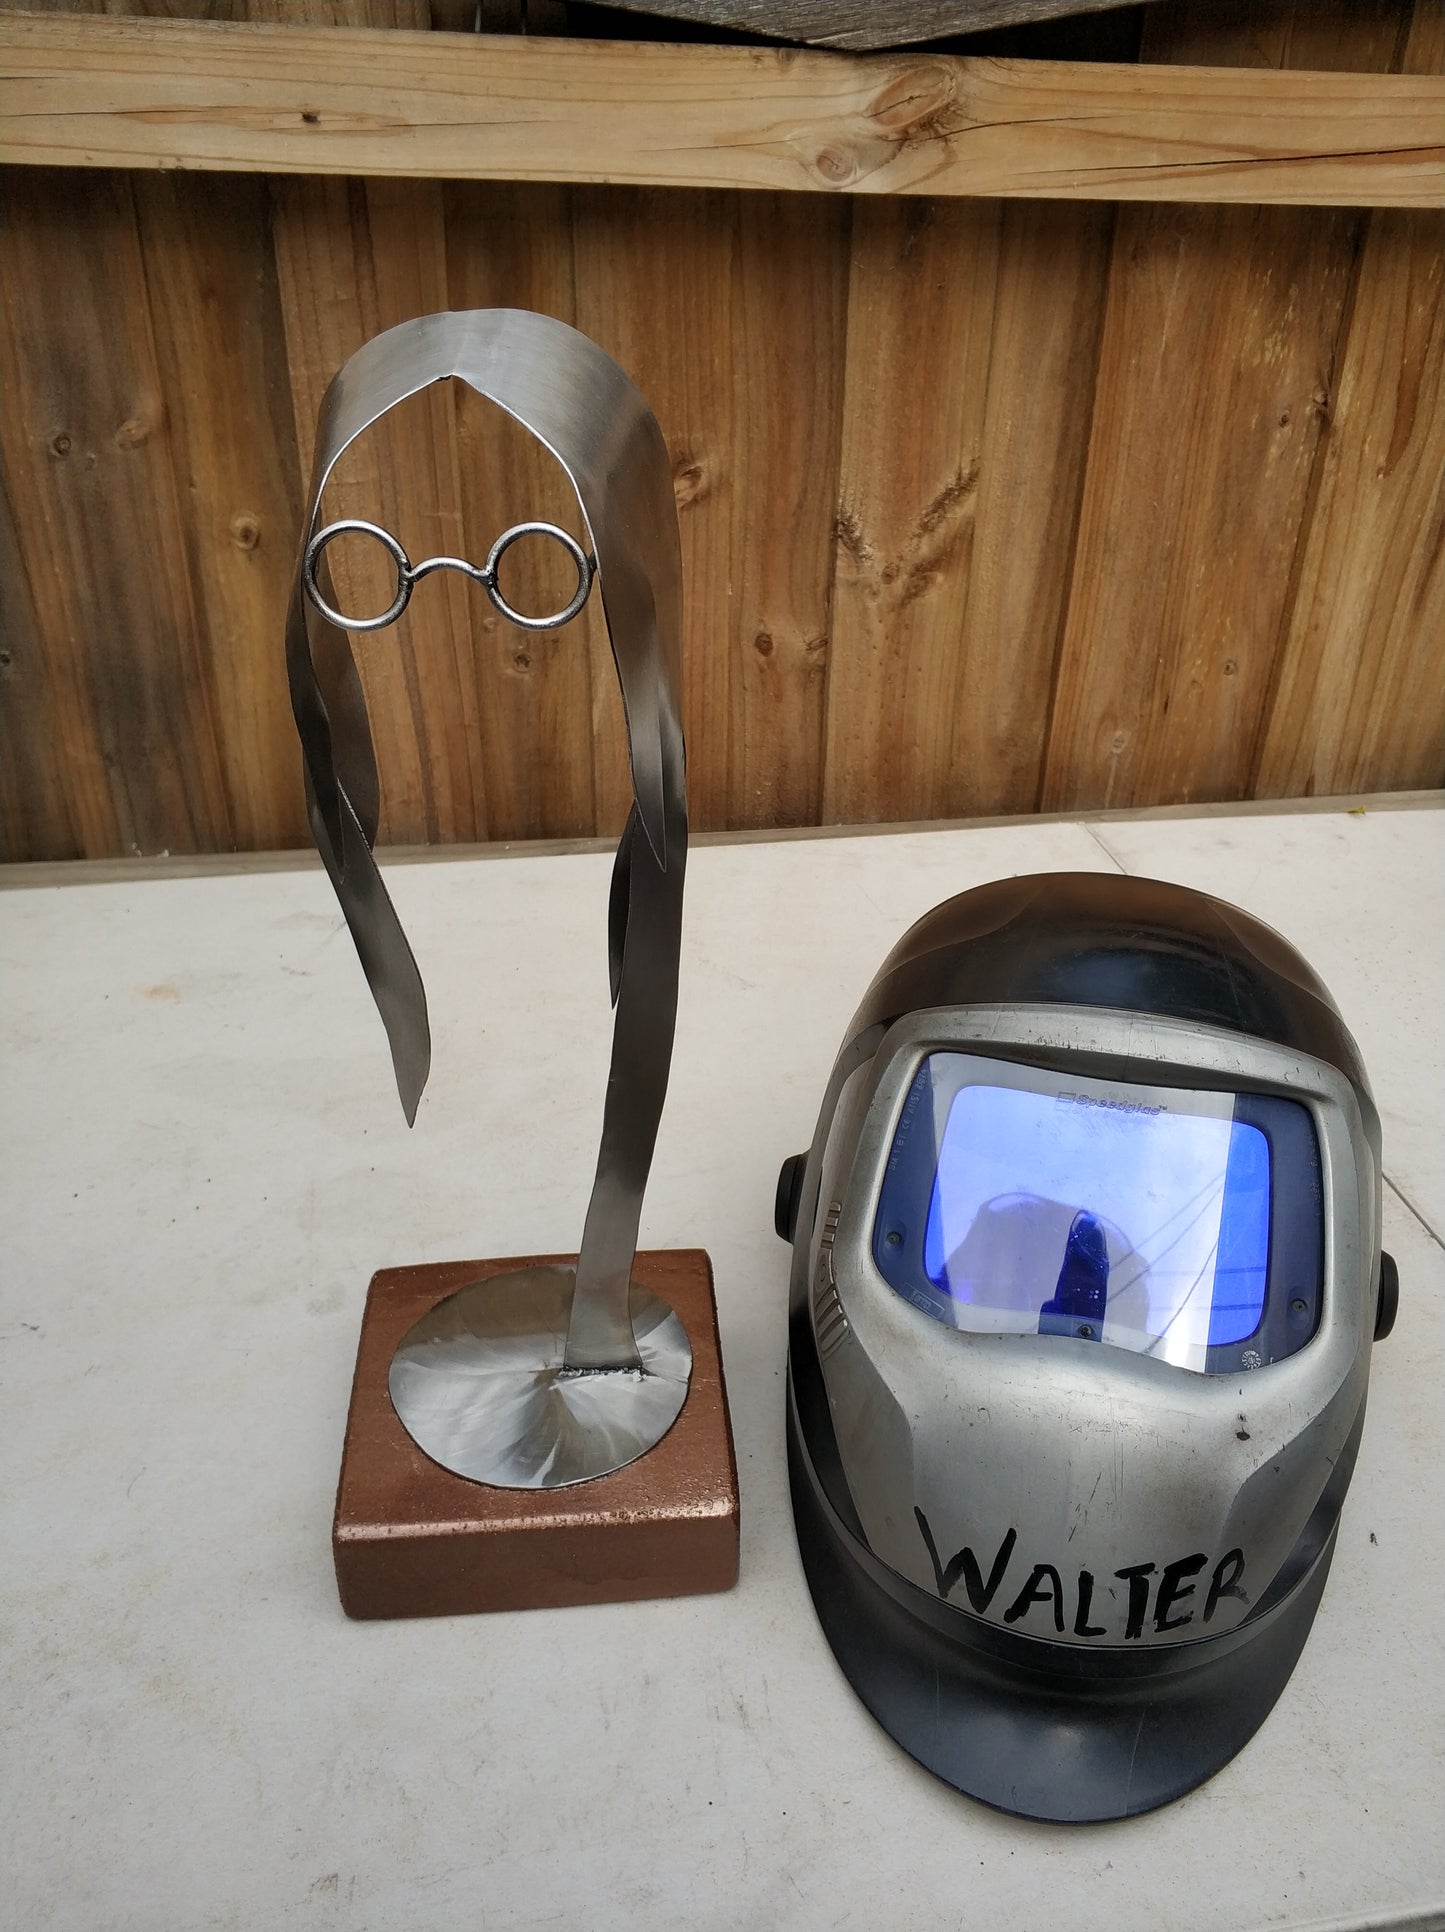 John Lennon Stainless Steel Sculpture, Wood Base Sculpture,Desktop Sculpture.